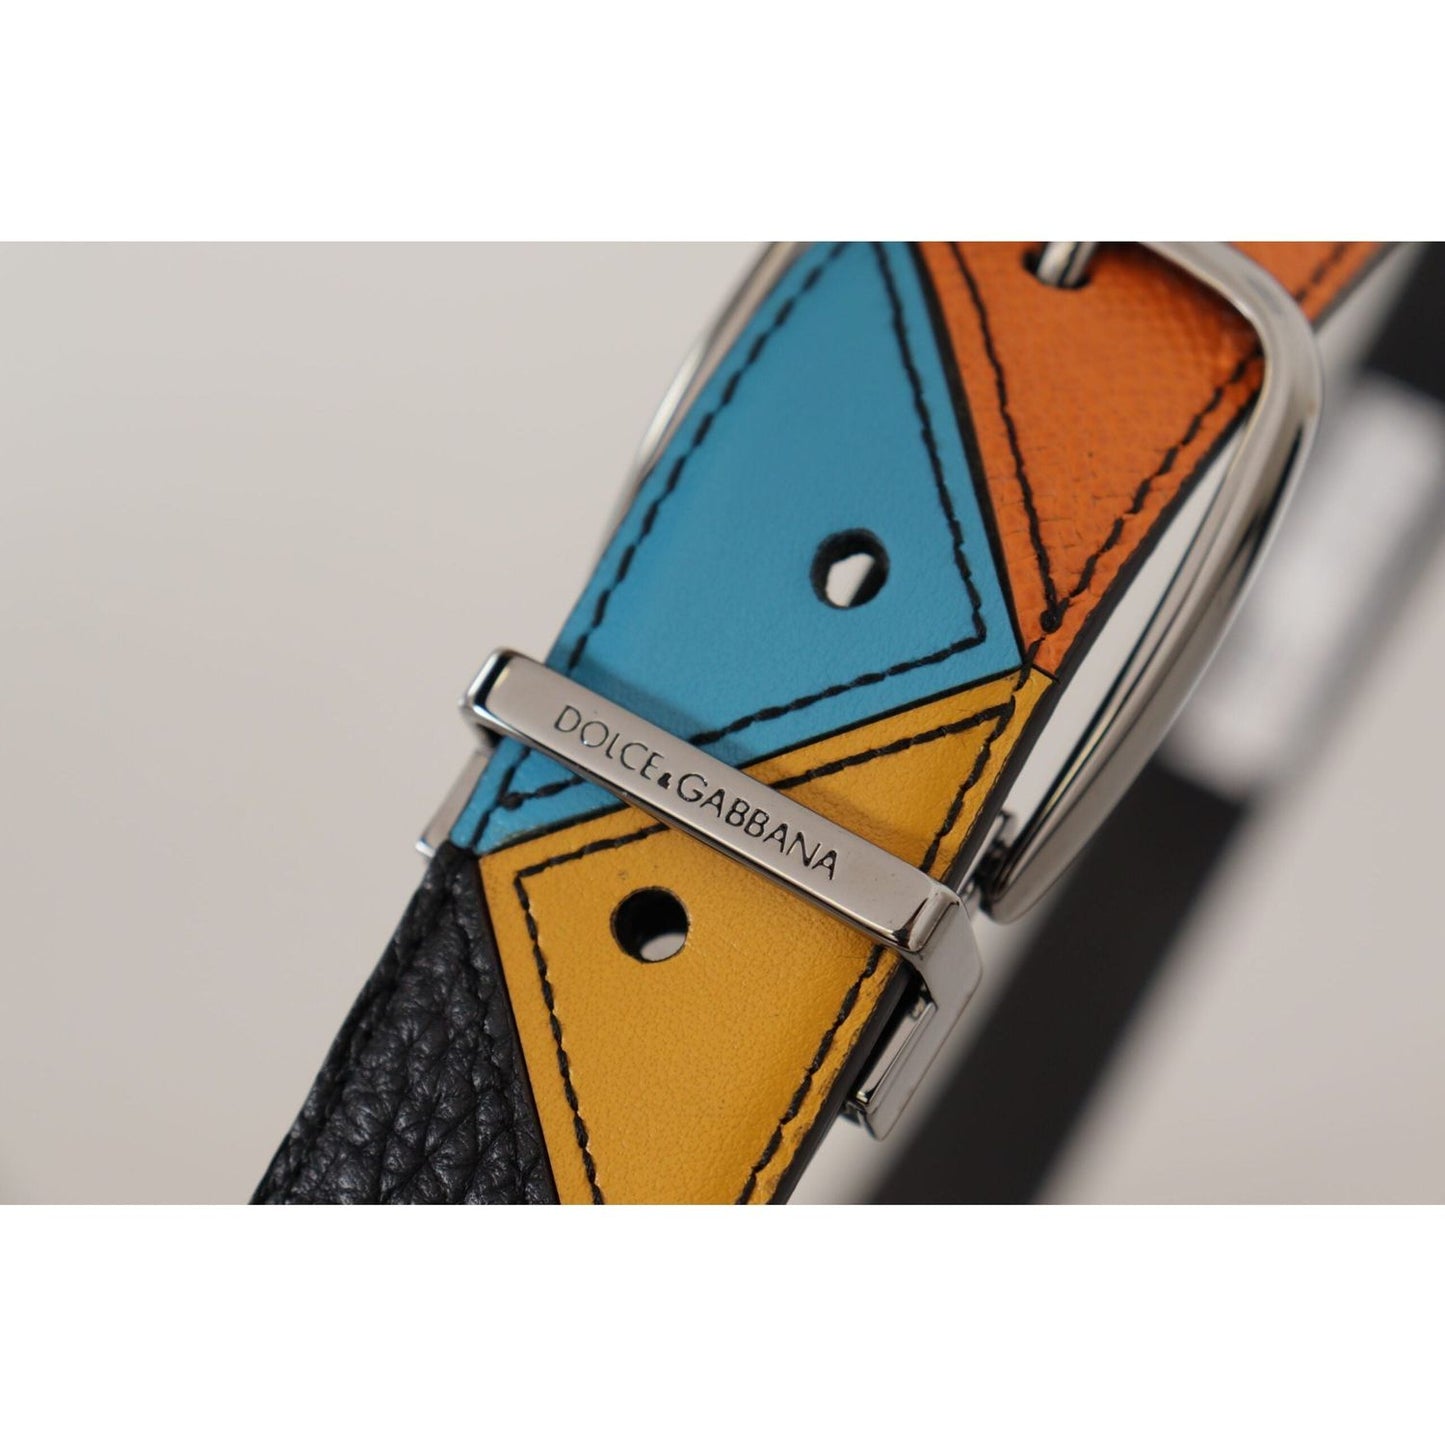 Dolce & Gabbana Elegant Multicolor Leather Belt with Silver Buckle multicolor-leather-silver-tone-logo-buckle-belt